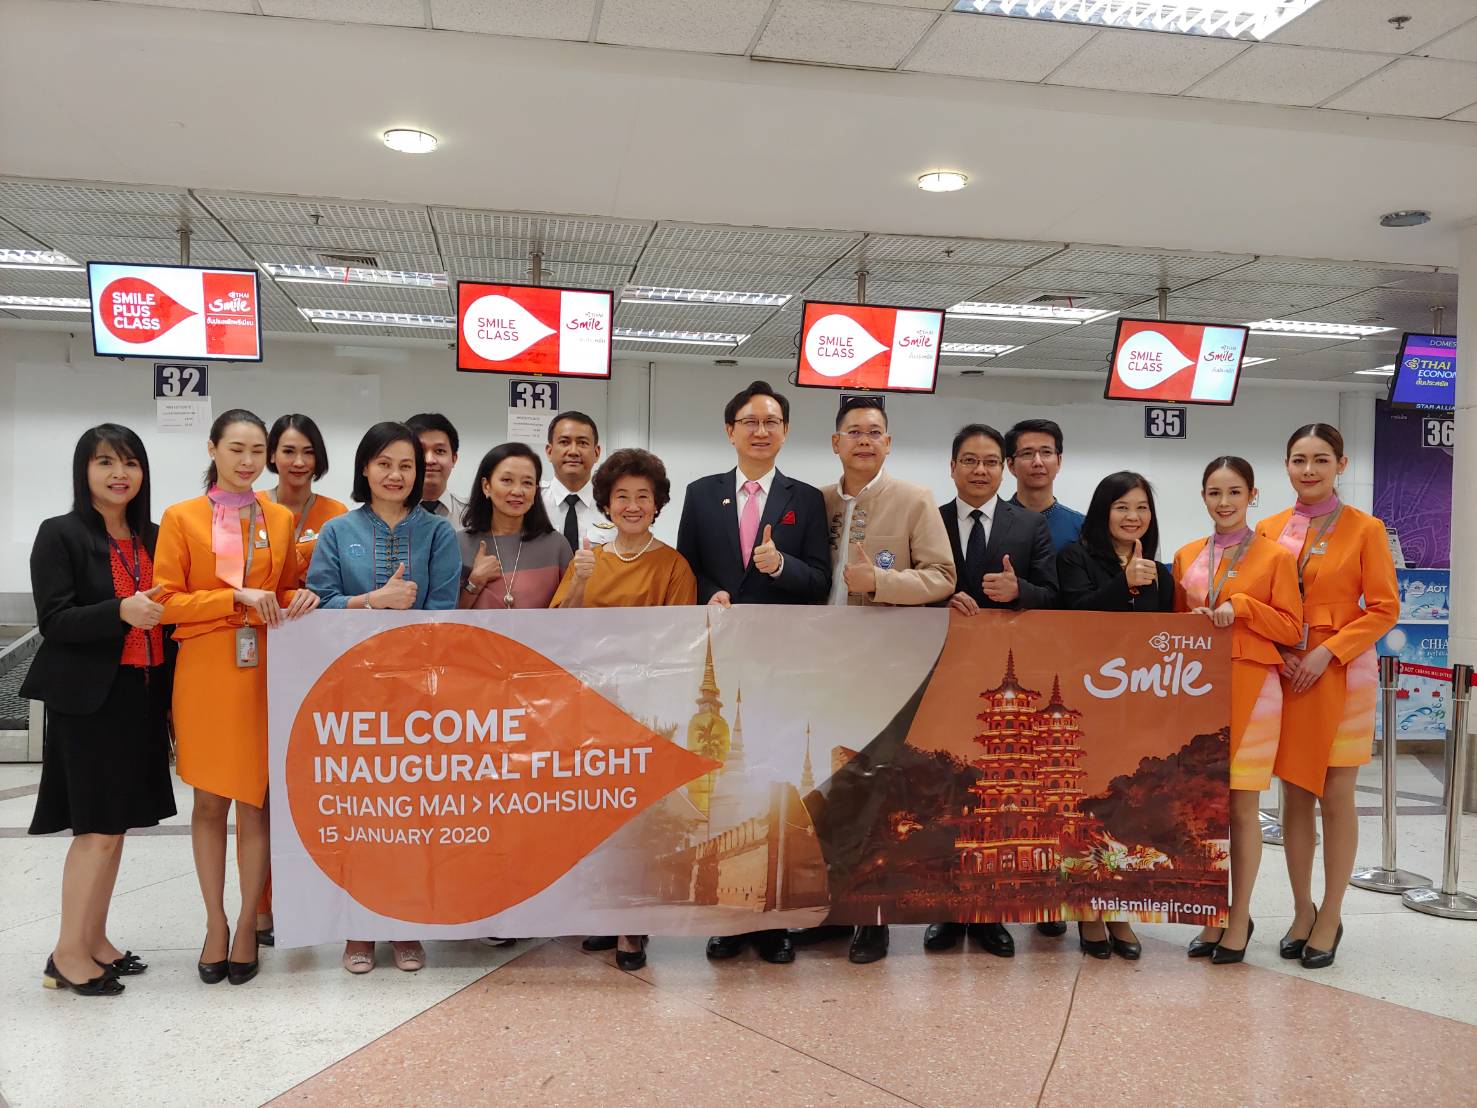 นายถง เจิ้นหยวน (童振源) ผู้แทนสำนักงานเศรษฐกิจและวัฒนธรรมไทเป ประจำประเทศไทยเดินทางมาร่วมพิธีเปิดเส้นทางบินเกาสง-เชียงใหม่ของสายการบินไทยสมายล์ที่จะให้บริการ 4 เที่ยวบินต่อสัปดาห์ 